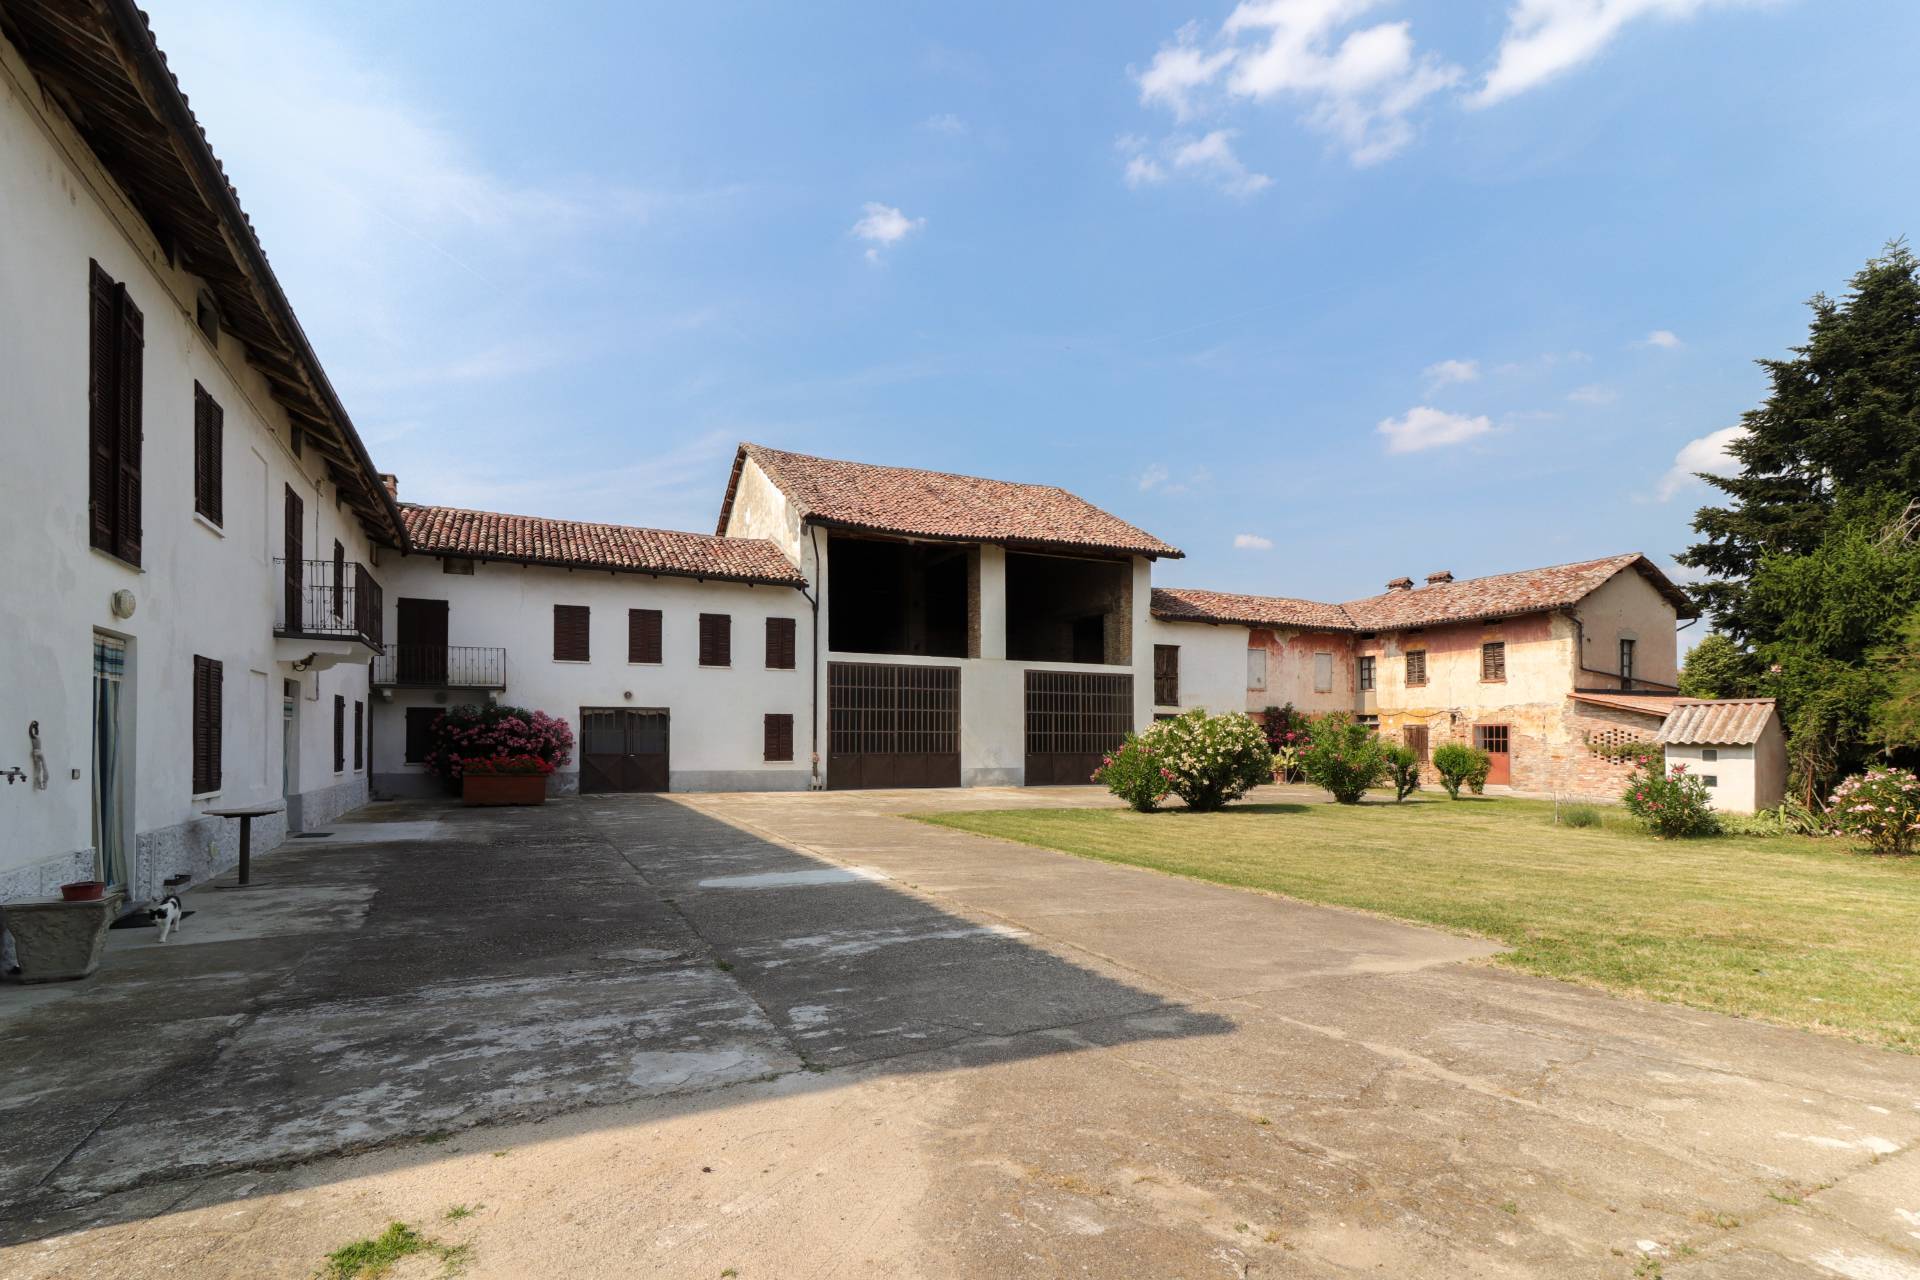 Rustico / Casale in vendita a Costigliole d'Asti, 10 locali, zona Località: S.Anna, prezzo € 320.000 | PortaleAgenzieImmobiliari.it